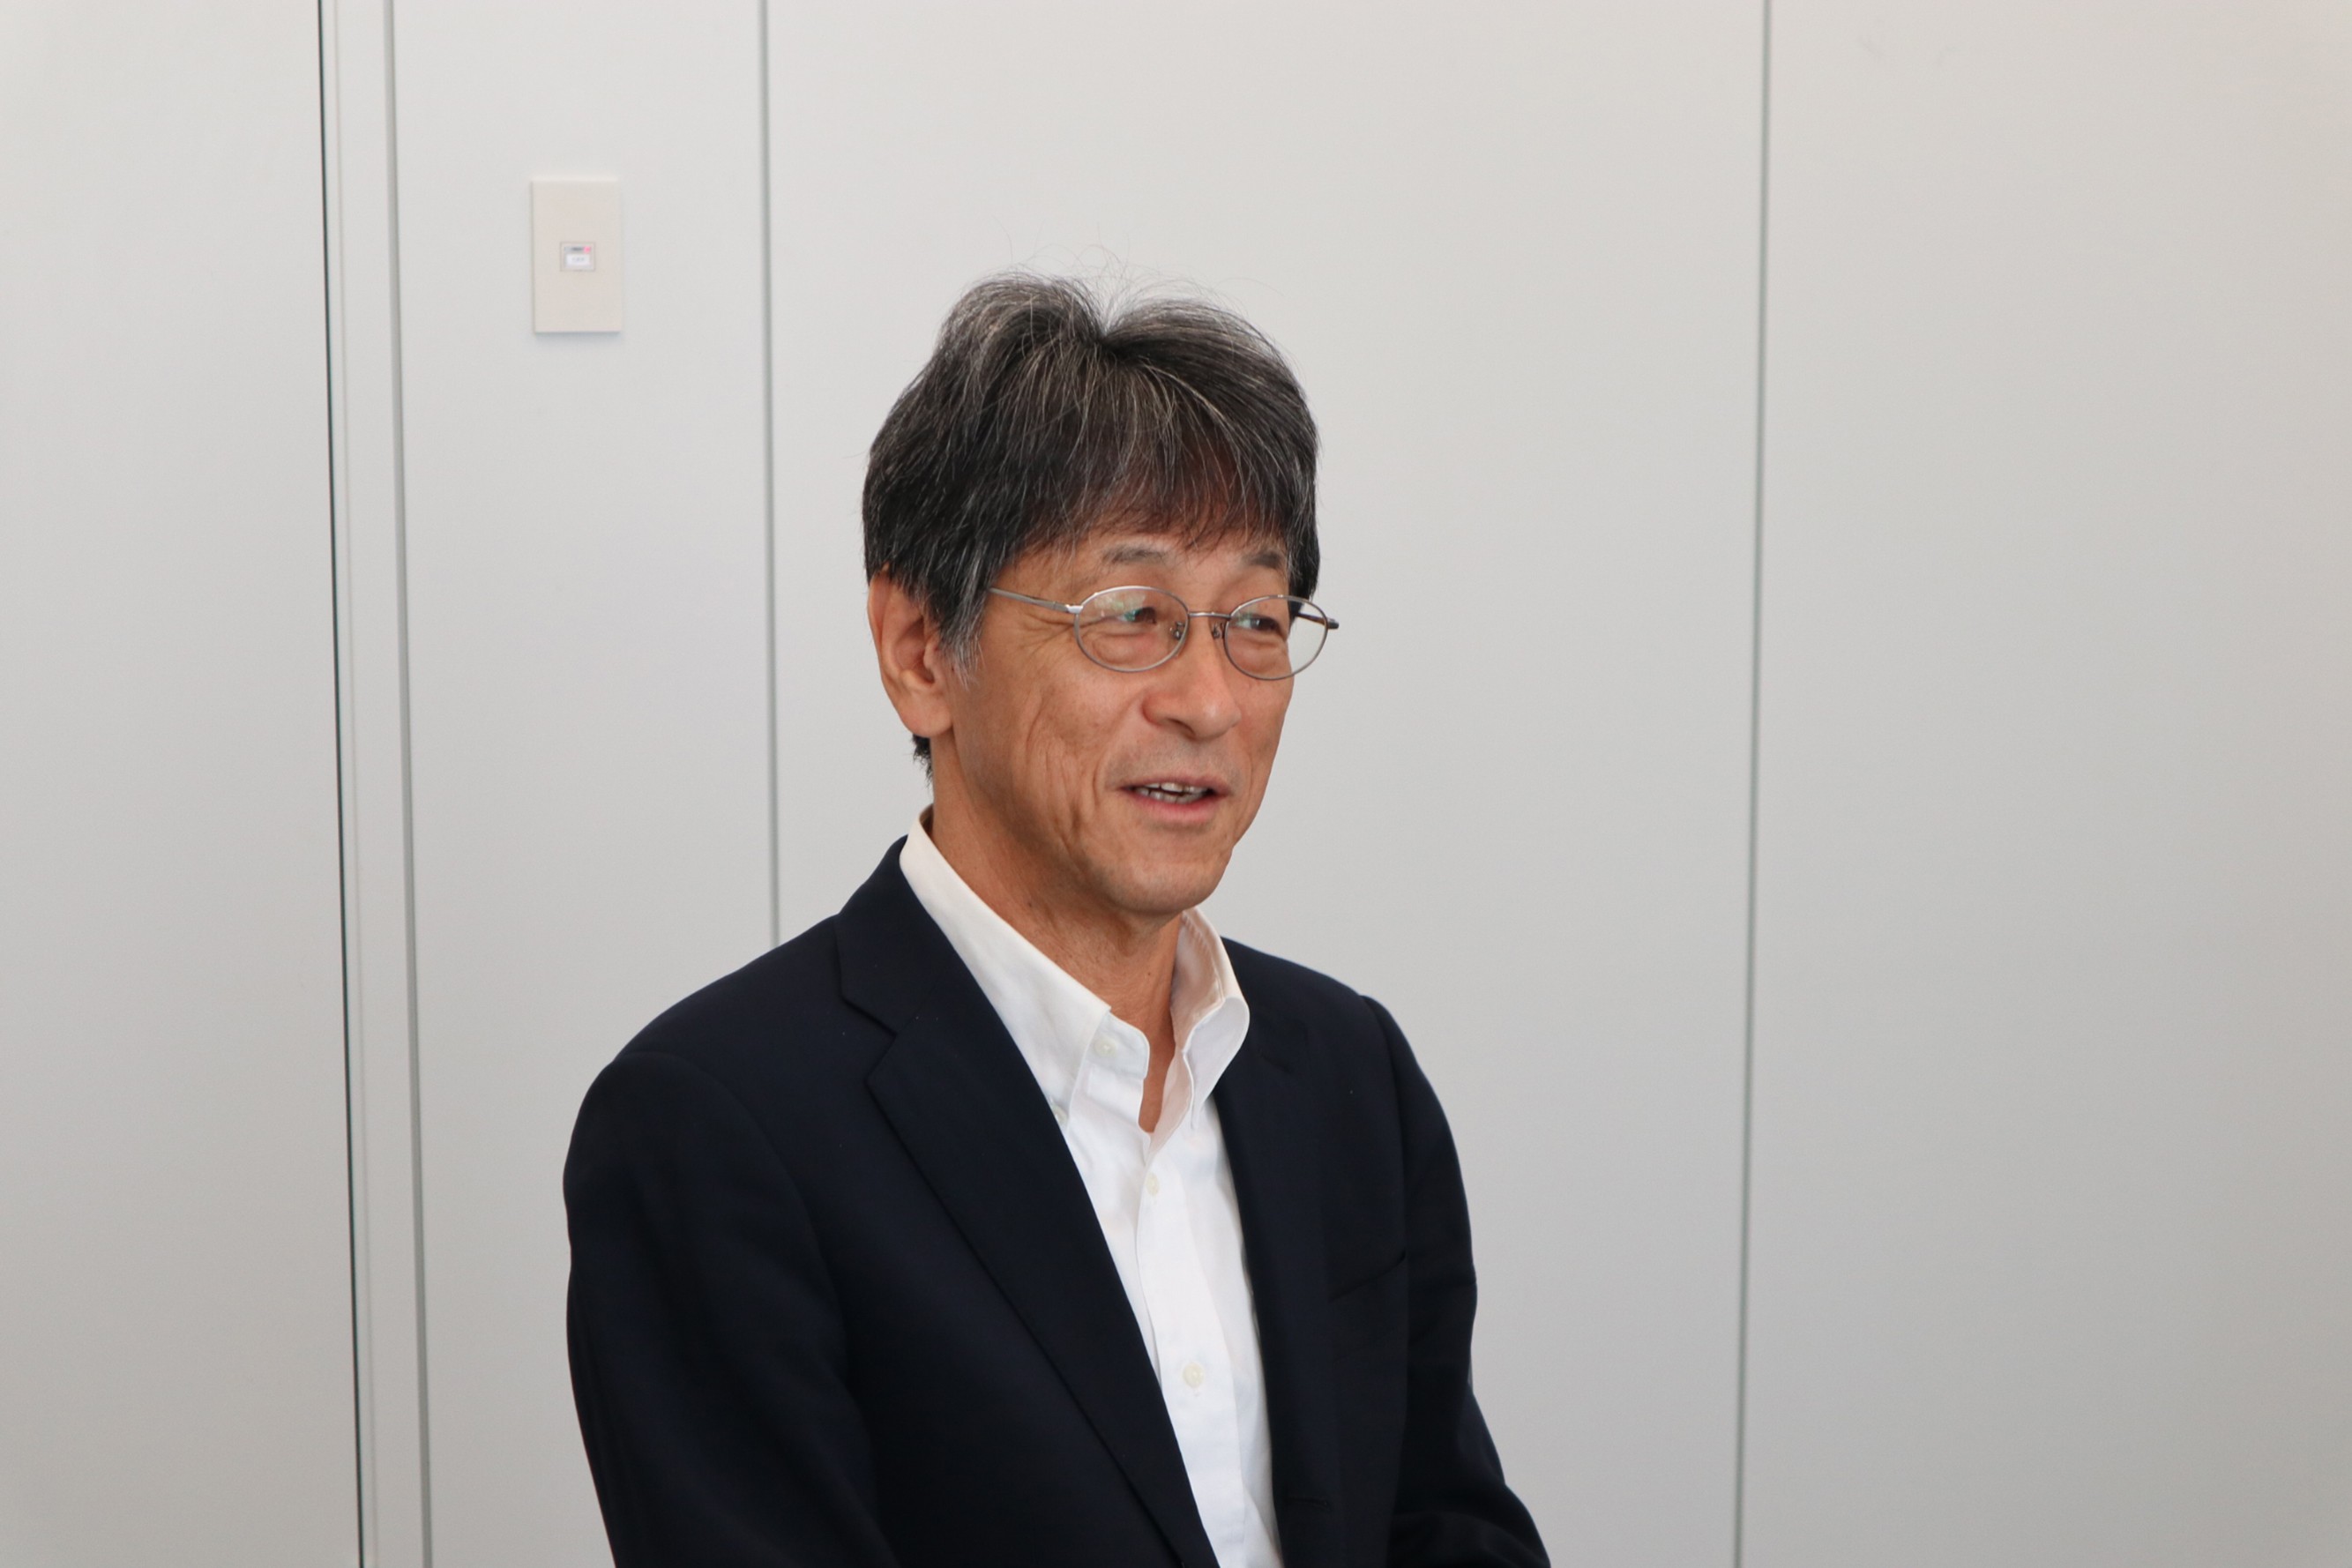 Kazuya Inagaki, president